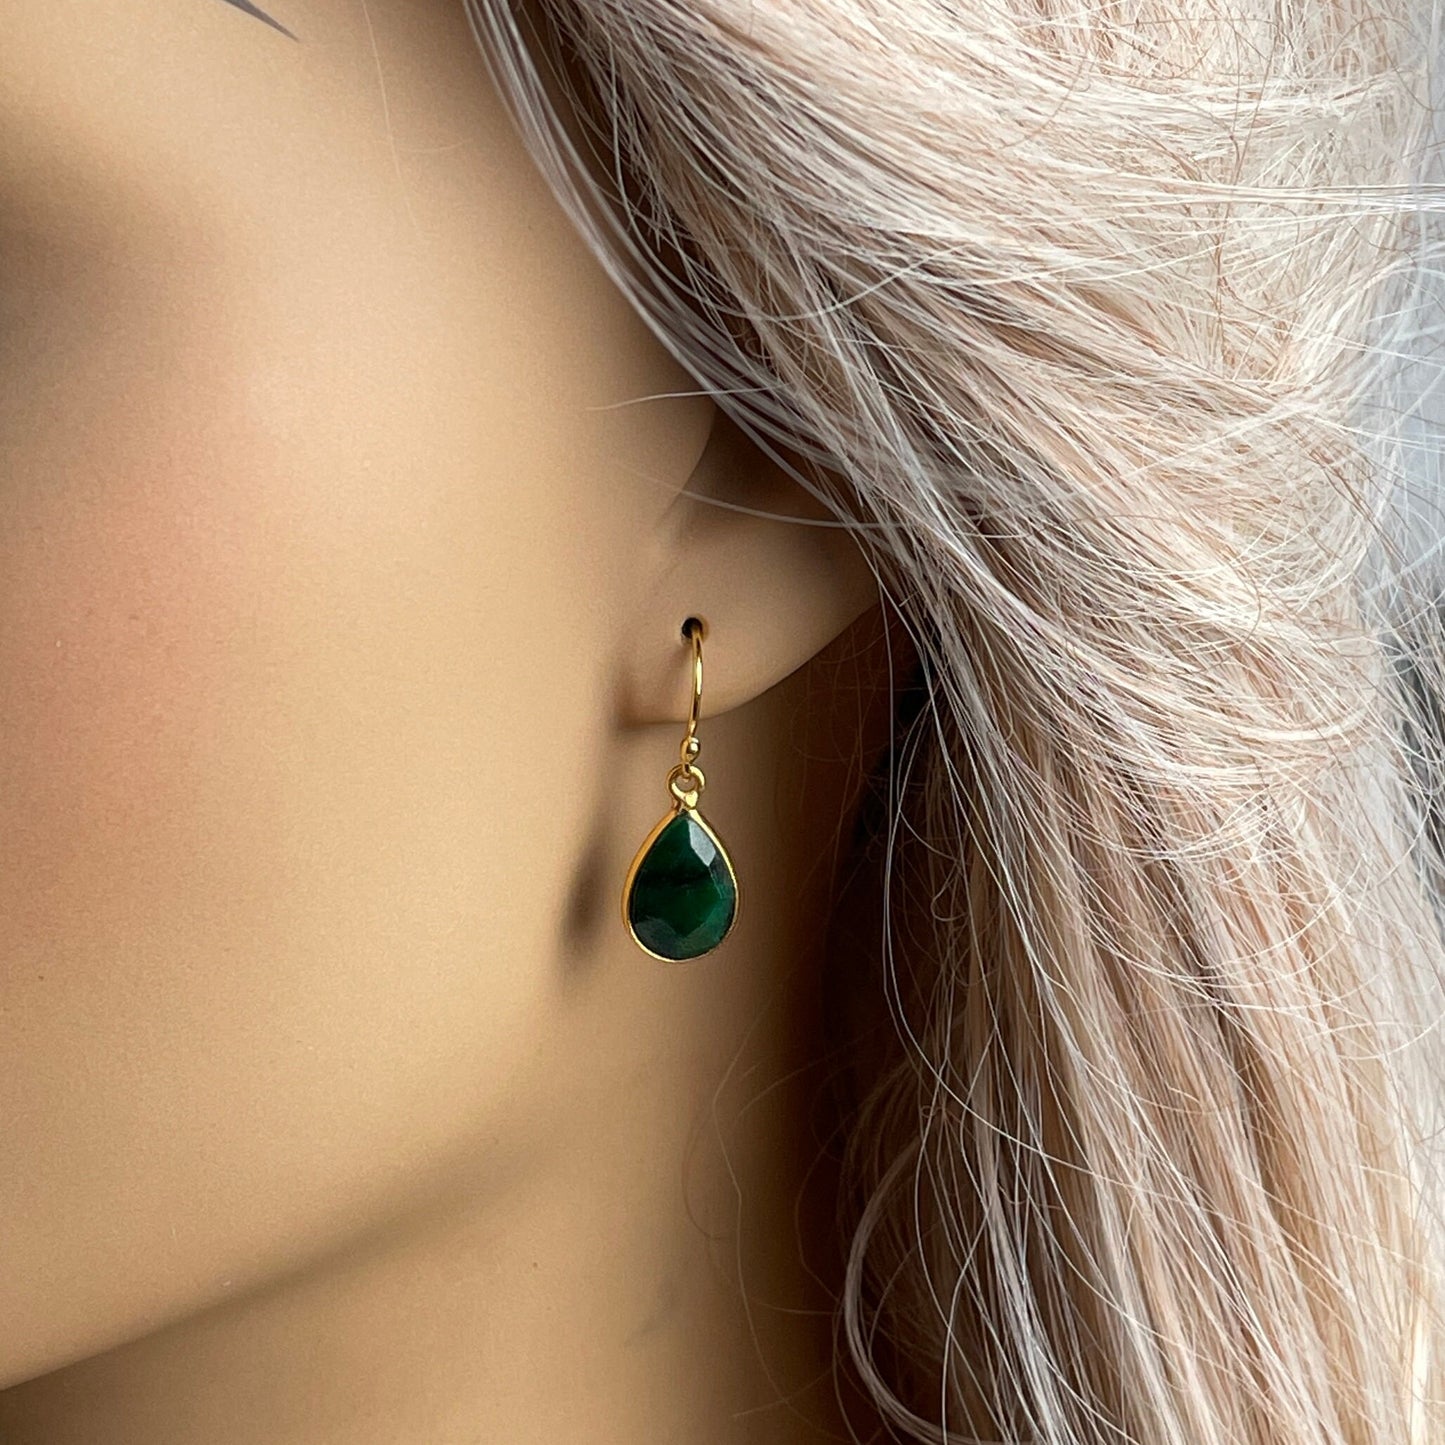 Small Emerald Earrings Gold - Dainty Emerald Dangle Earrings